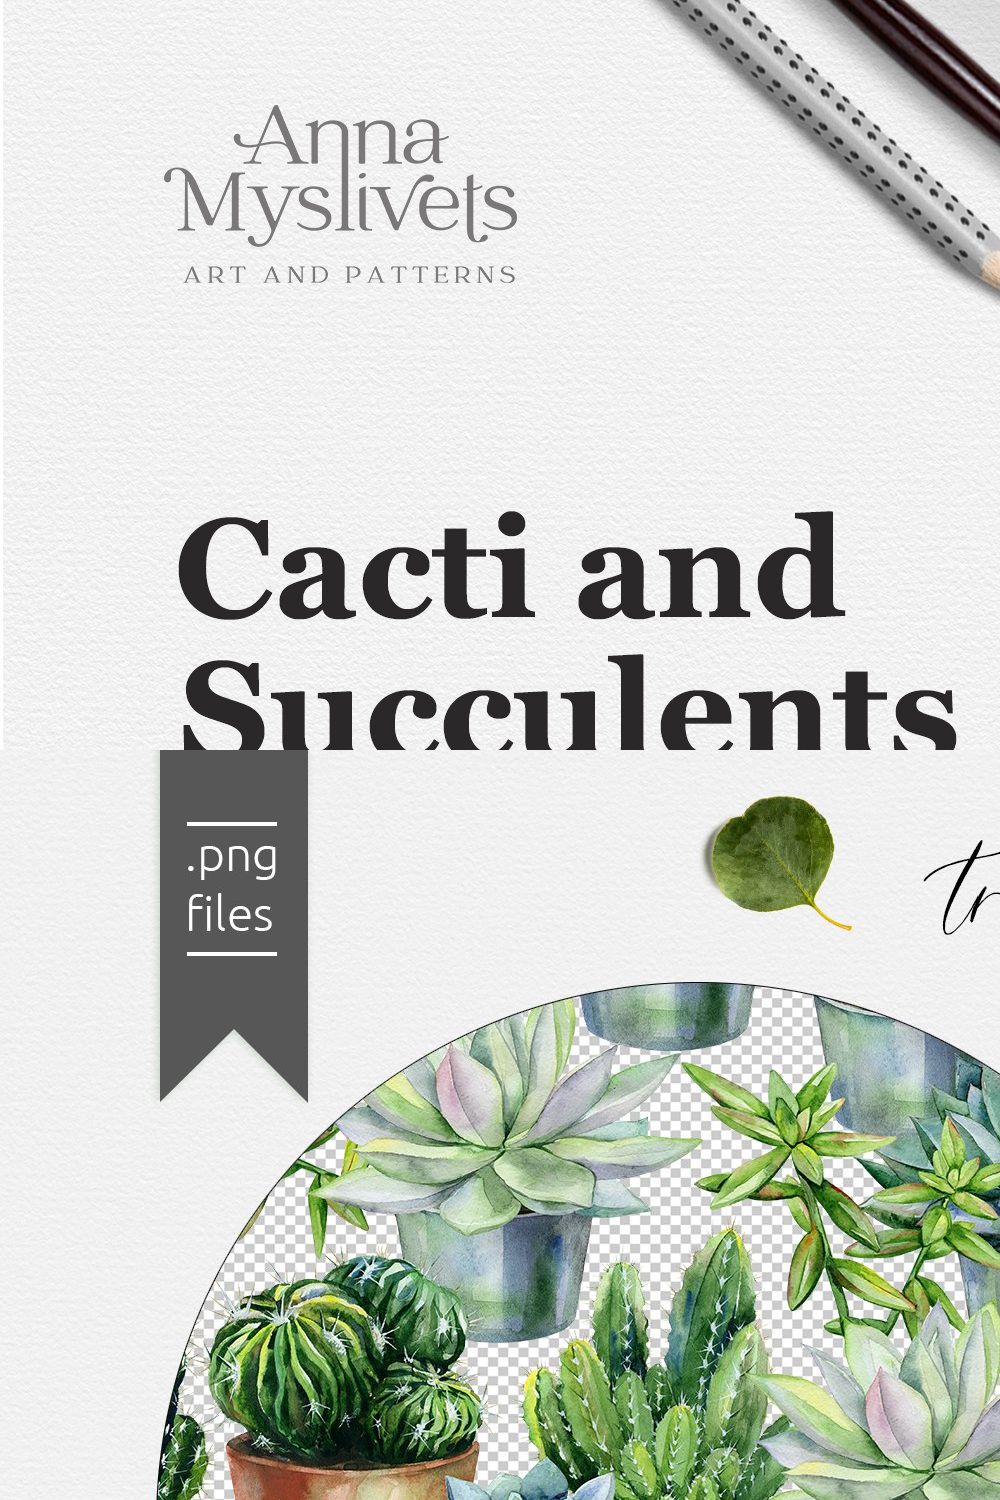 Cacti & Succulents pinterest preview image.